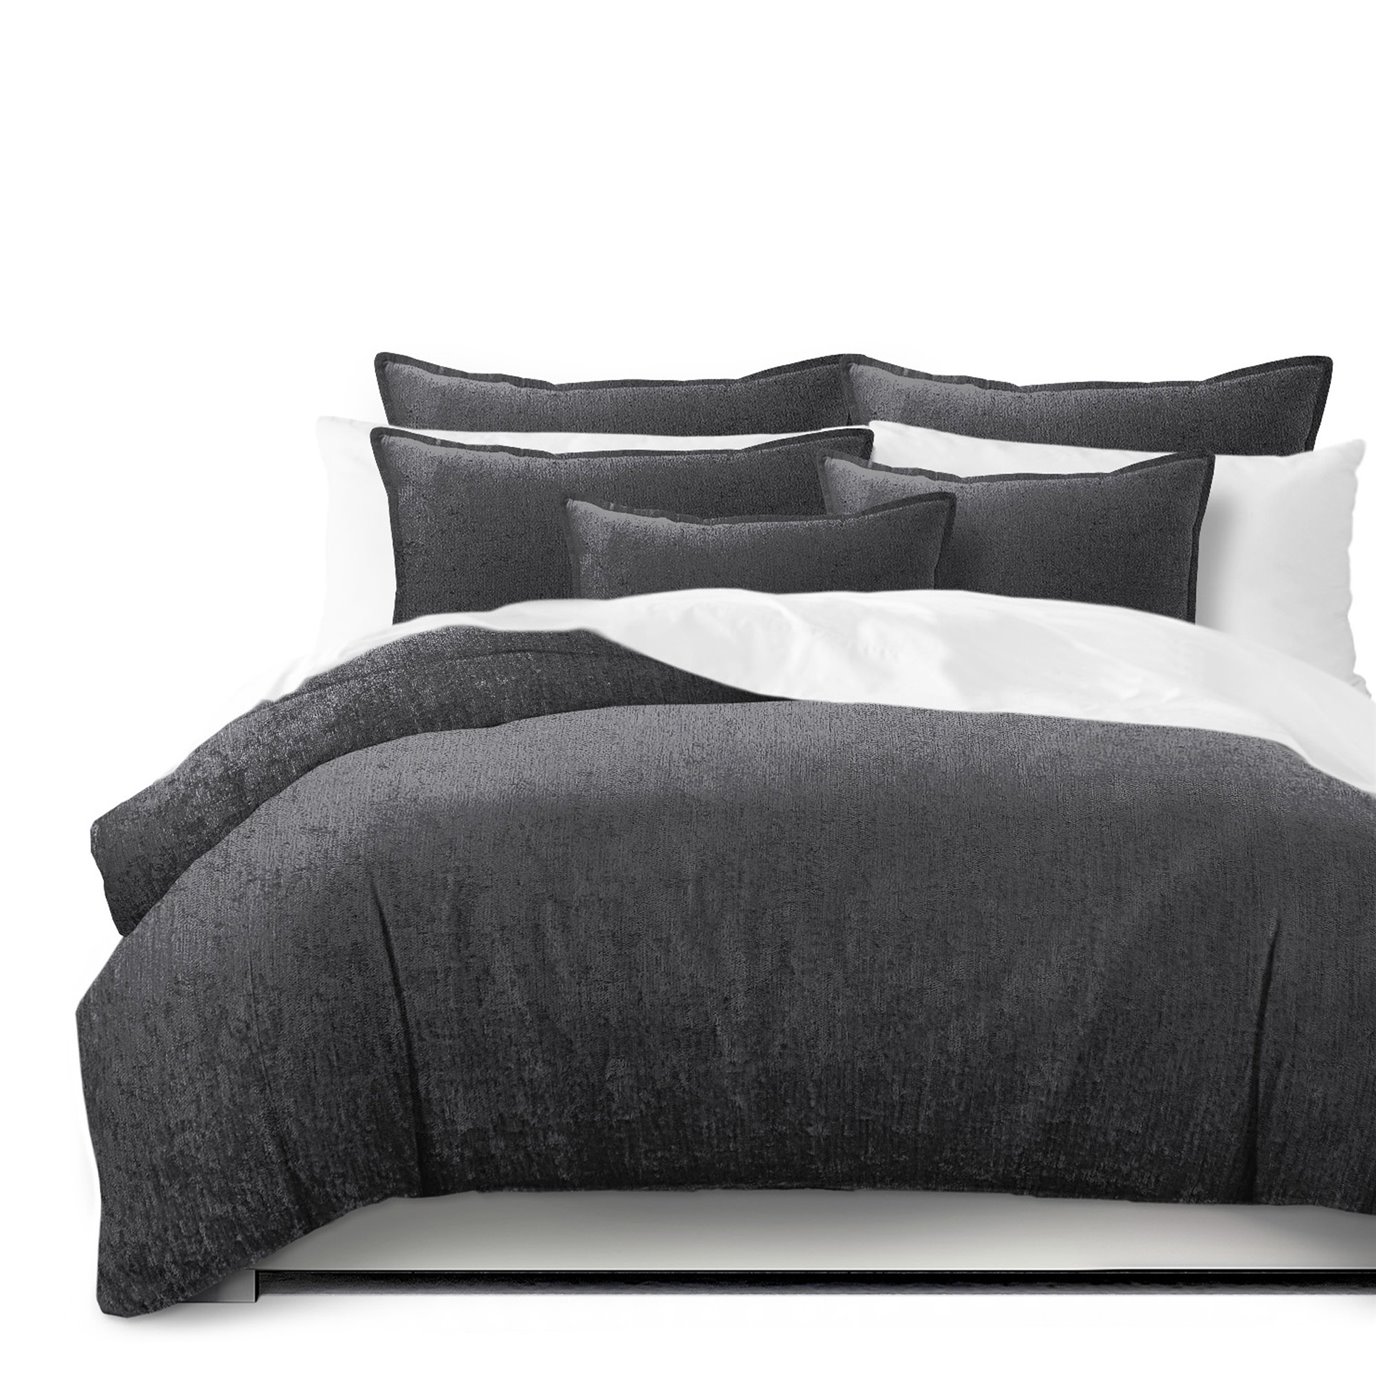 Juno Velvet Gray Comforter and Pillow Sham(s) Set - Size Full